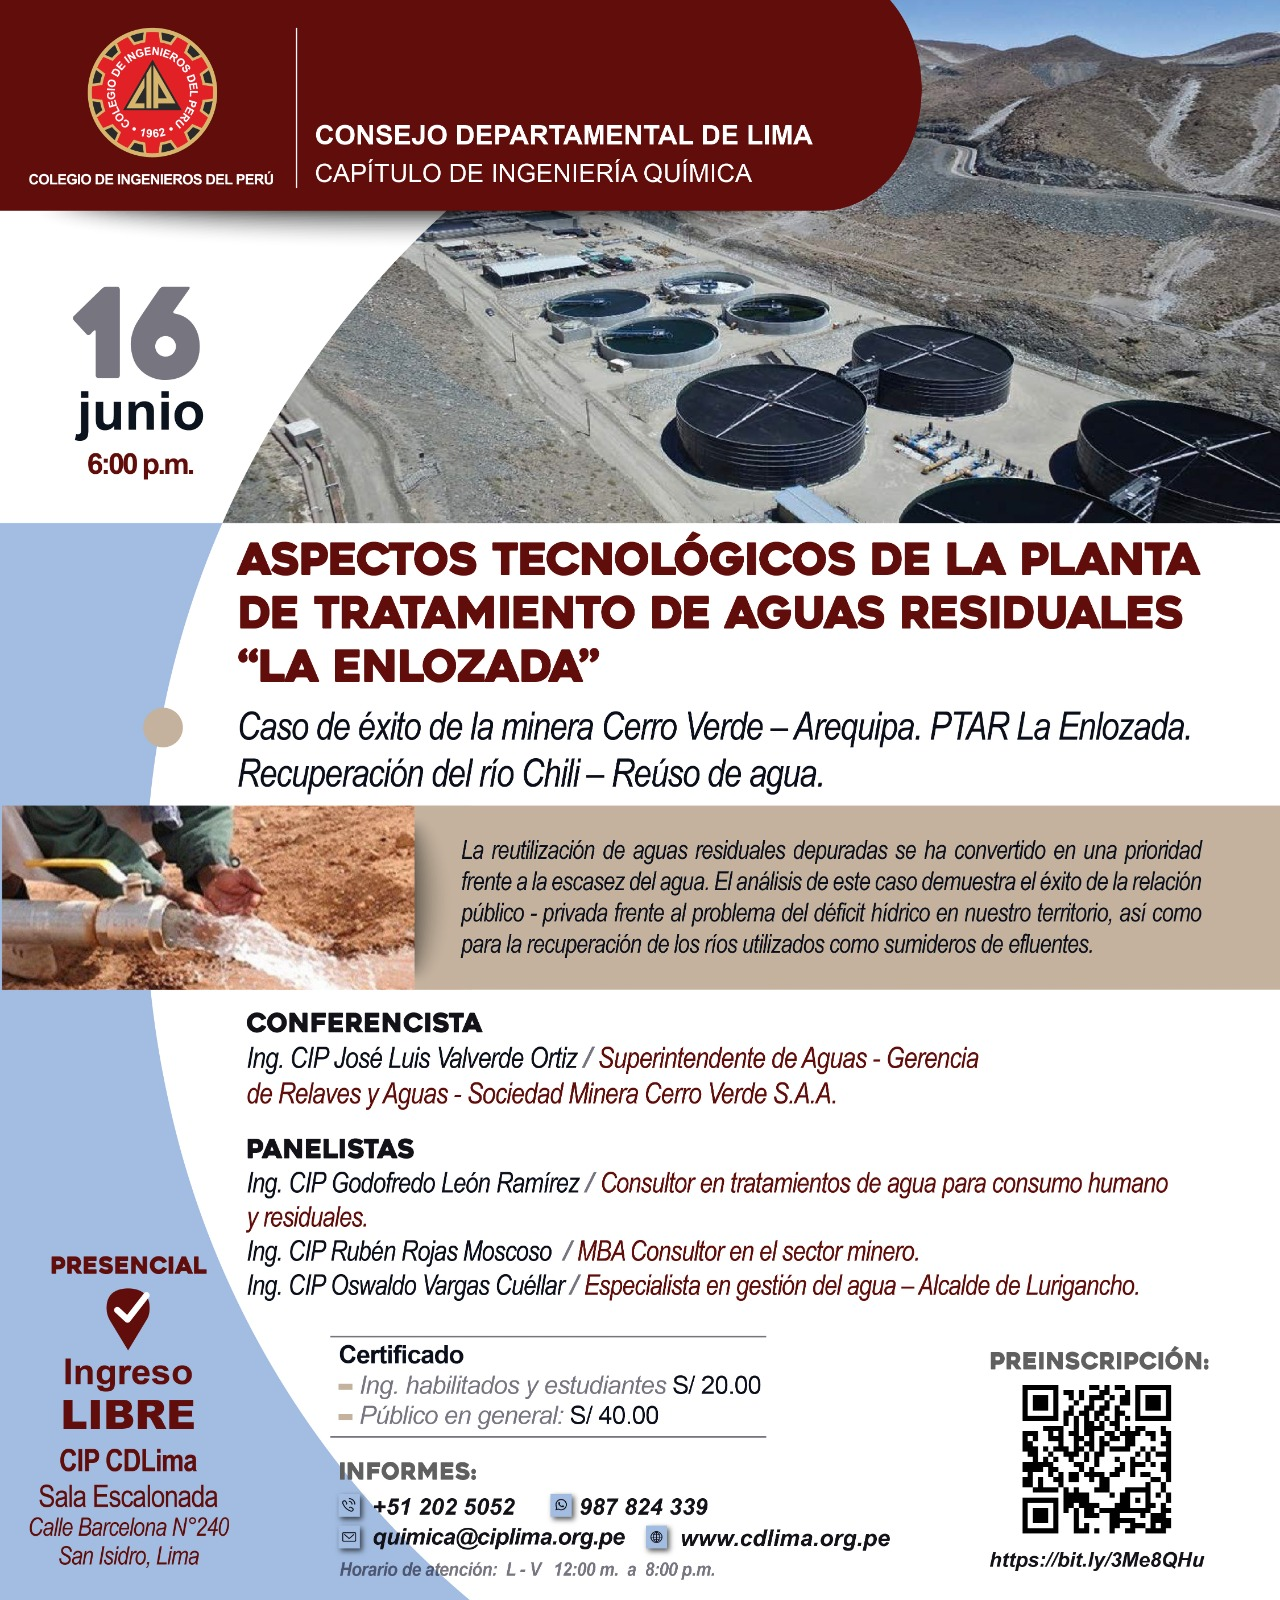 Aspectos Tecnológicos de la Planta de Tratamiento de Aguas Residuales "La Enlozada" - Sociedad Minera Cerro Verde S.A.A